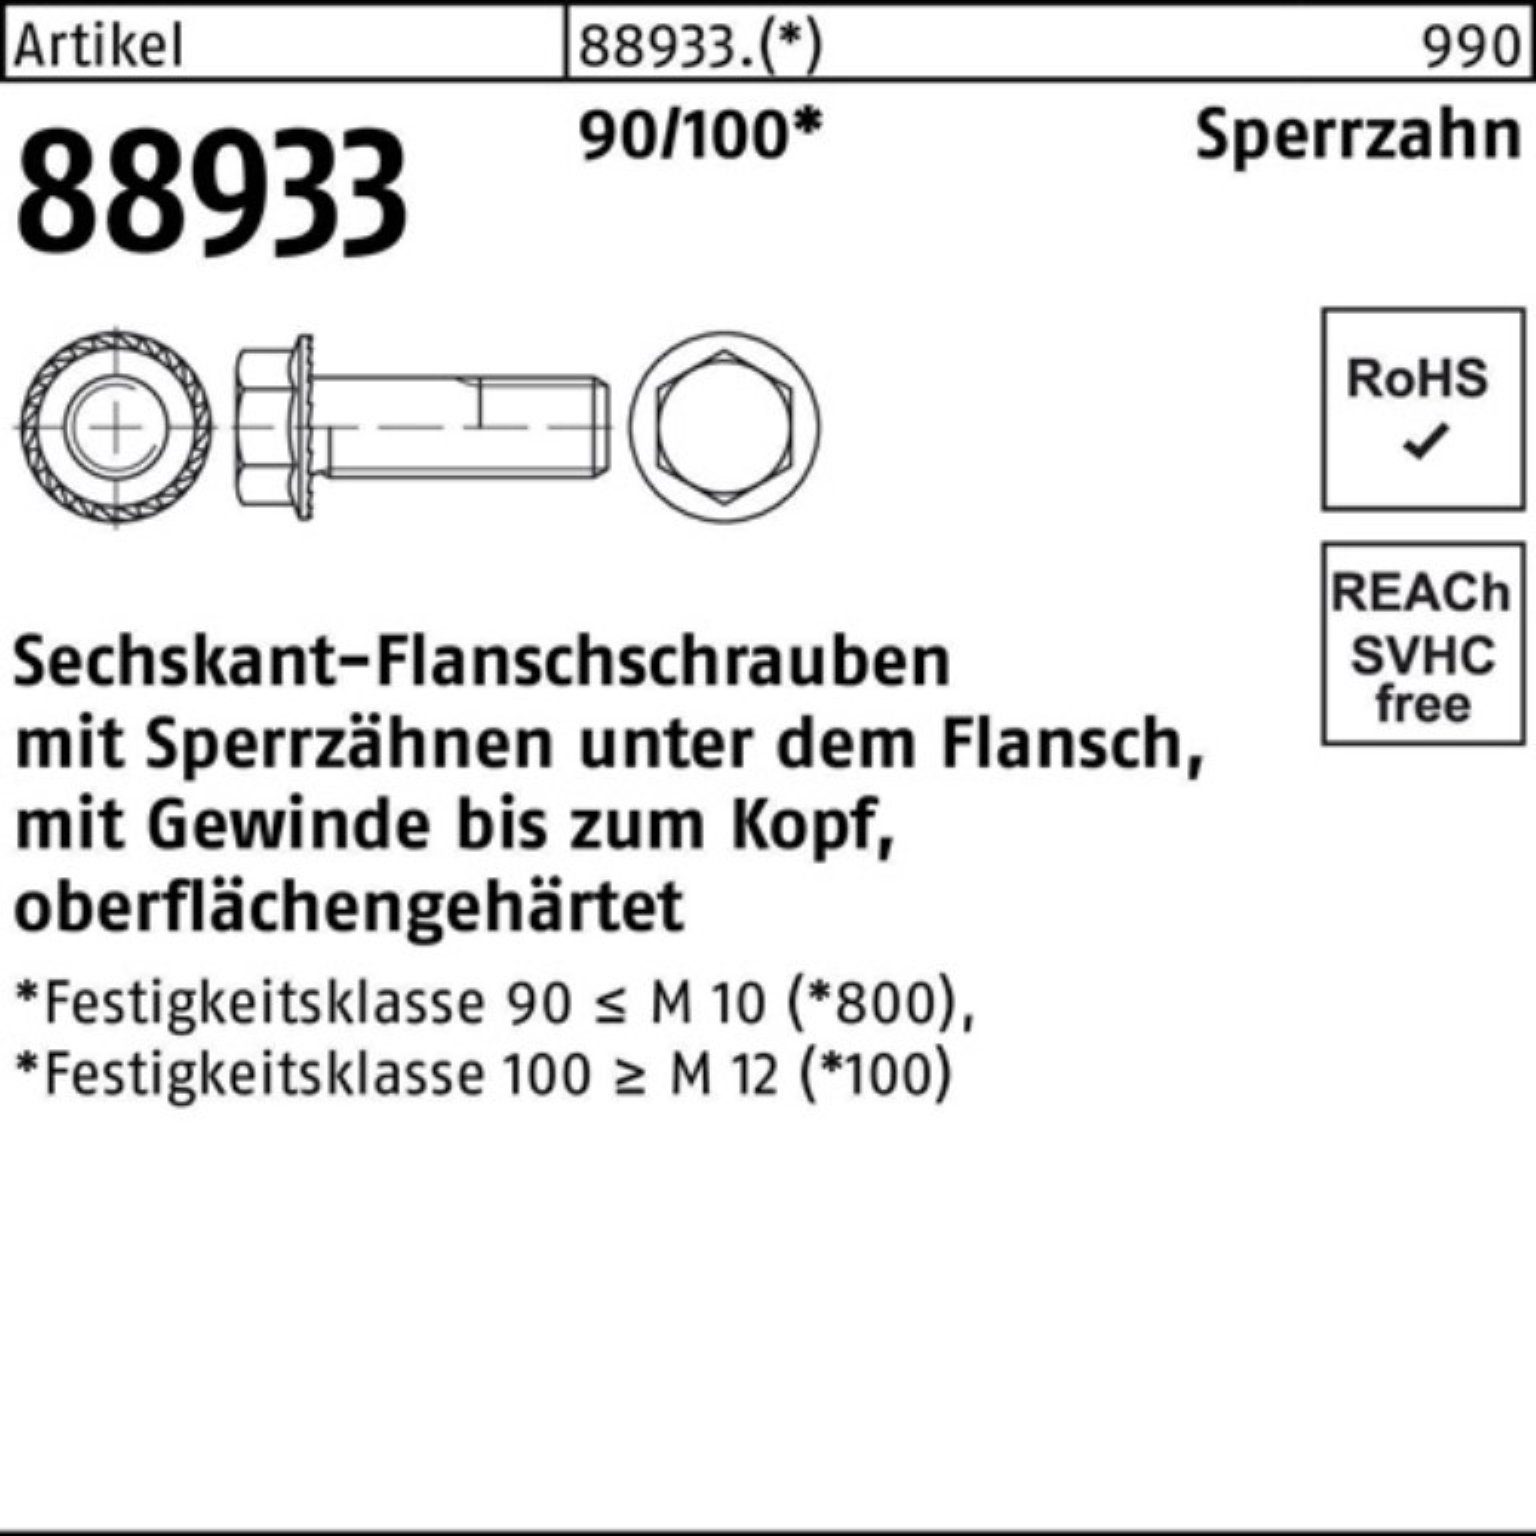 M5x 14 Sechskantflanschschraube Sperrz. Pack 88933 R 500er 90/100 5 Schraube VG Reyher